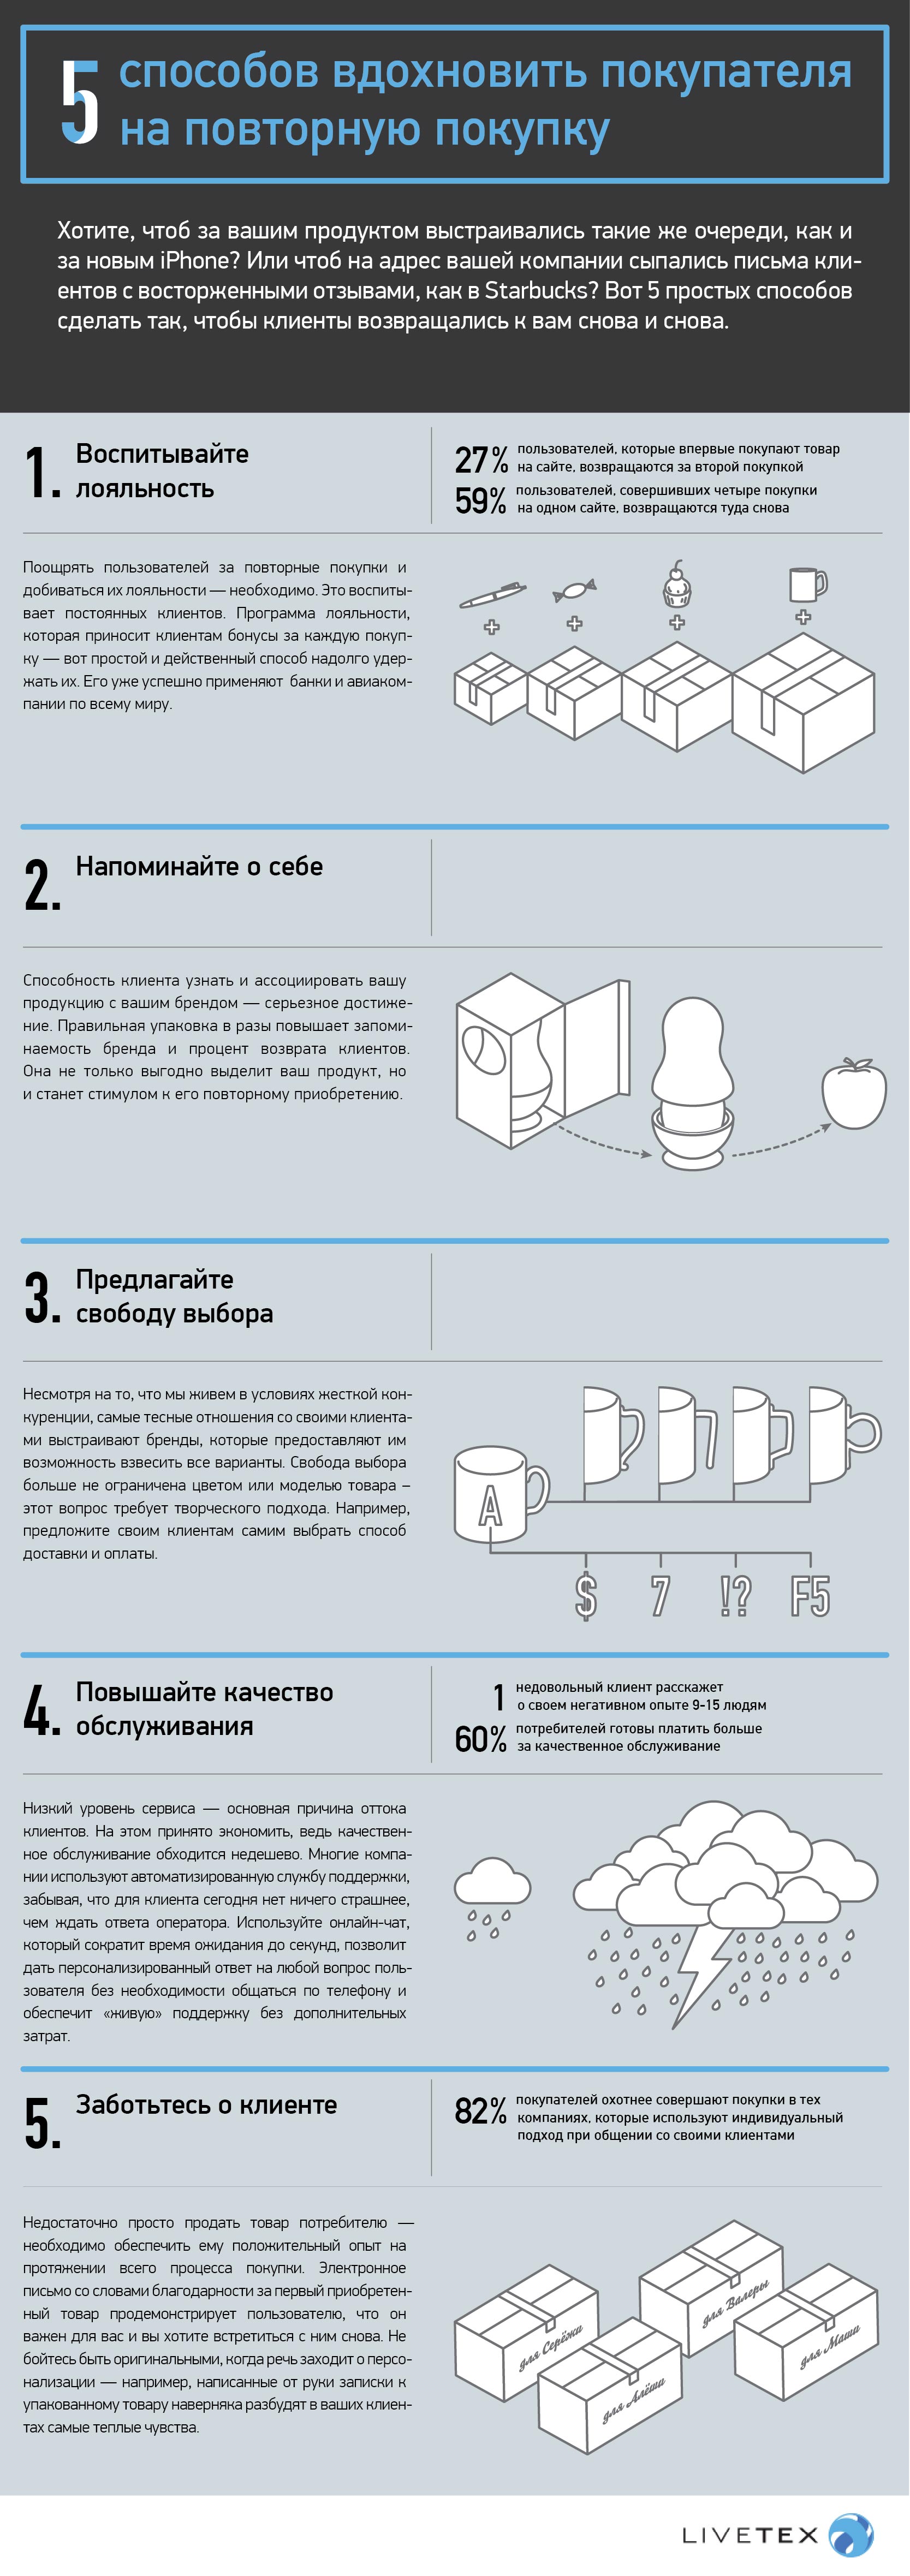 livetex_infographicas1-01-3